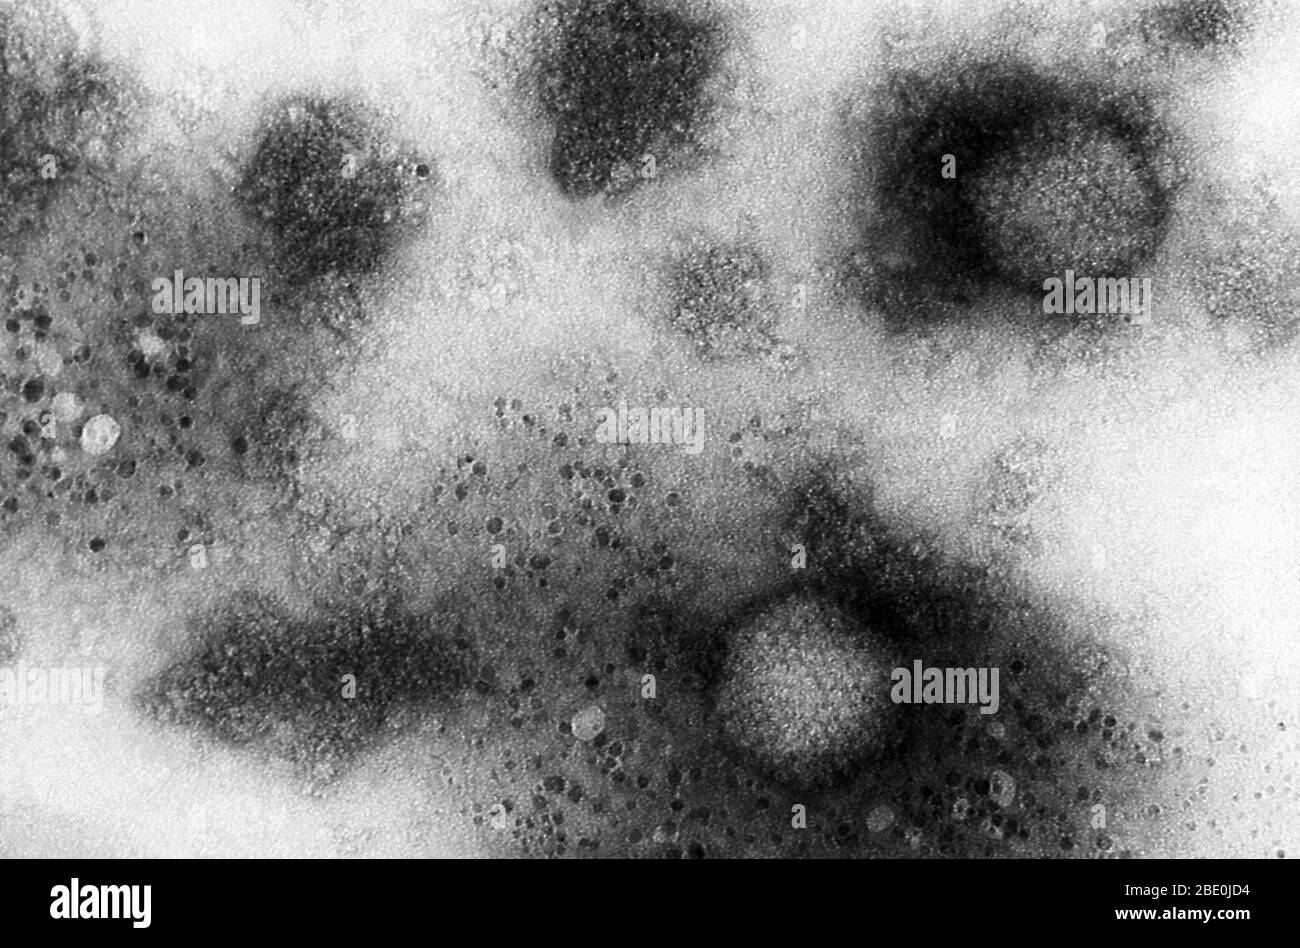 Transmission Electron Micrograph (TEM) zeigt einige der ultrastrukturellen Morphologie, die von zwei Adenovirus-2-Virionen gezeigt wird. Die Probe war pelletiert worden, wodurch die viralen Partikel vor der Betrachtung unter dem Mikroskop konzentriert wurden. Bei dieser hohen Vergrößerung sind die Kapseligkeit sichtbar, die in diesem Fall hexagonal geformt, auch Hexonen genannt, und die zusammen die äußere Hülle des Adenovirus, das als Capsid bekannt ist, umfasste. Diese Adenoviren zeigten eine Ikosaedrale Symmetrie, was bedeutet, dass die Form durch 12 Scheitelpunkte und 20 Facetten charakterisiert wurde. Jedes Virion war 70nm-80nm, A Stockfoto